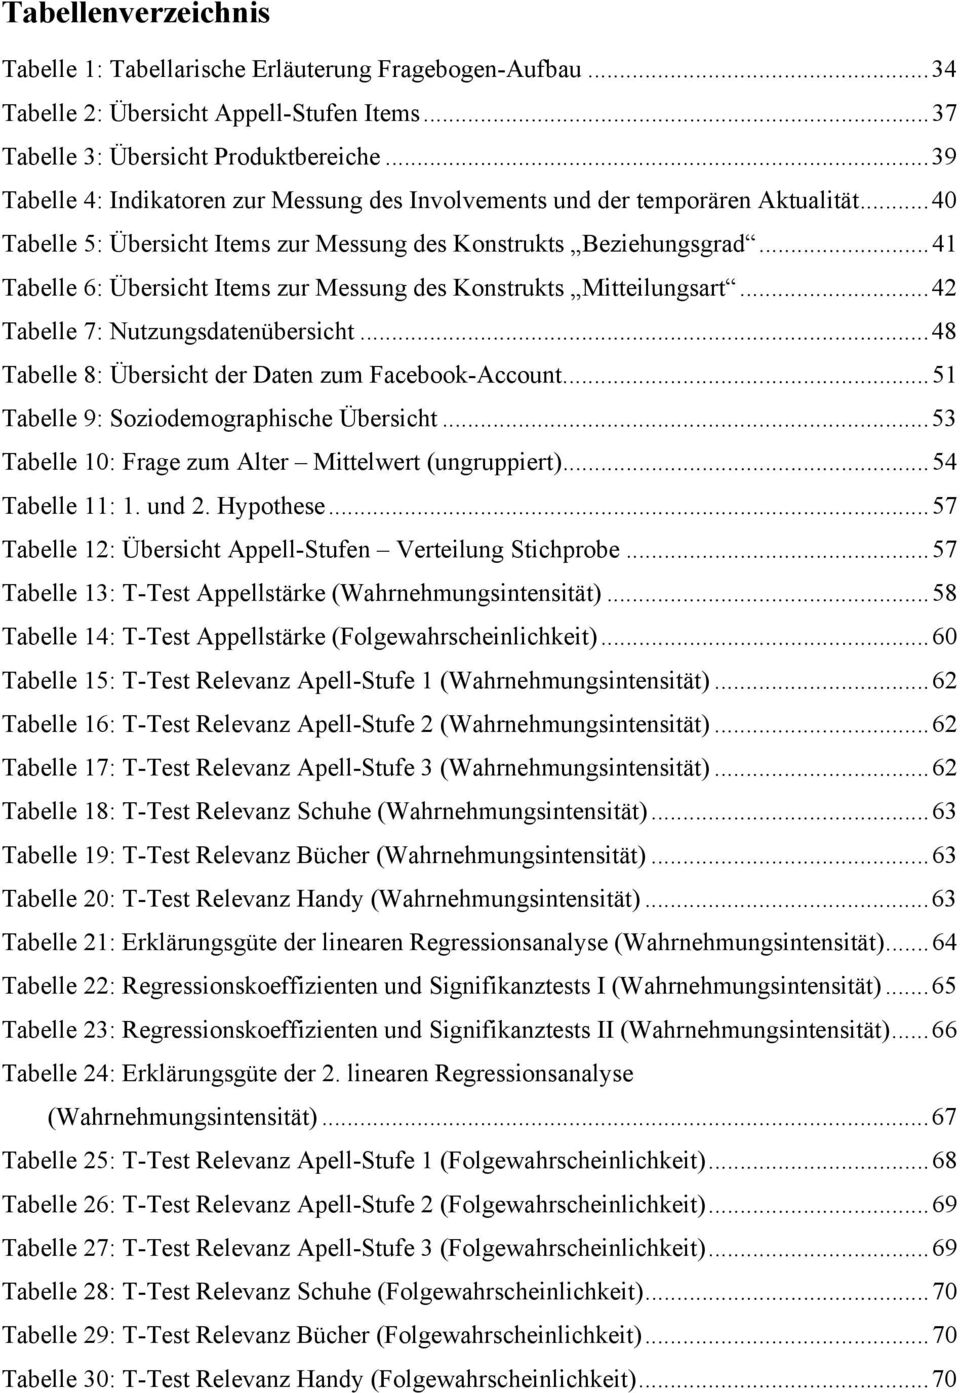 ..41 Tabelle 6: Übersicht Items zur Messung des Konstrukts Mitteilungsart...42 Tabelle 7: Nutzungsdatenübersicht...48 Tabelle 8: Übersicht der Daten zum Facebook-Account.